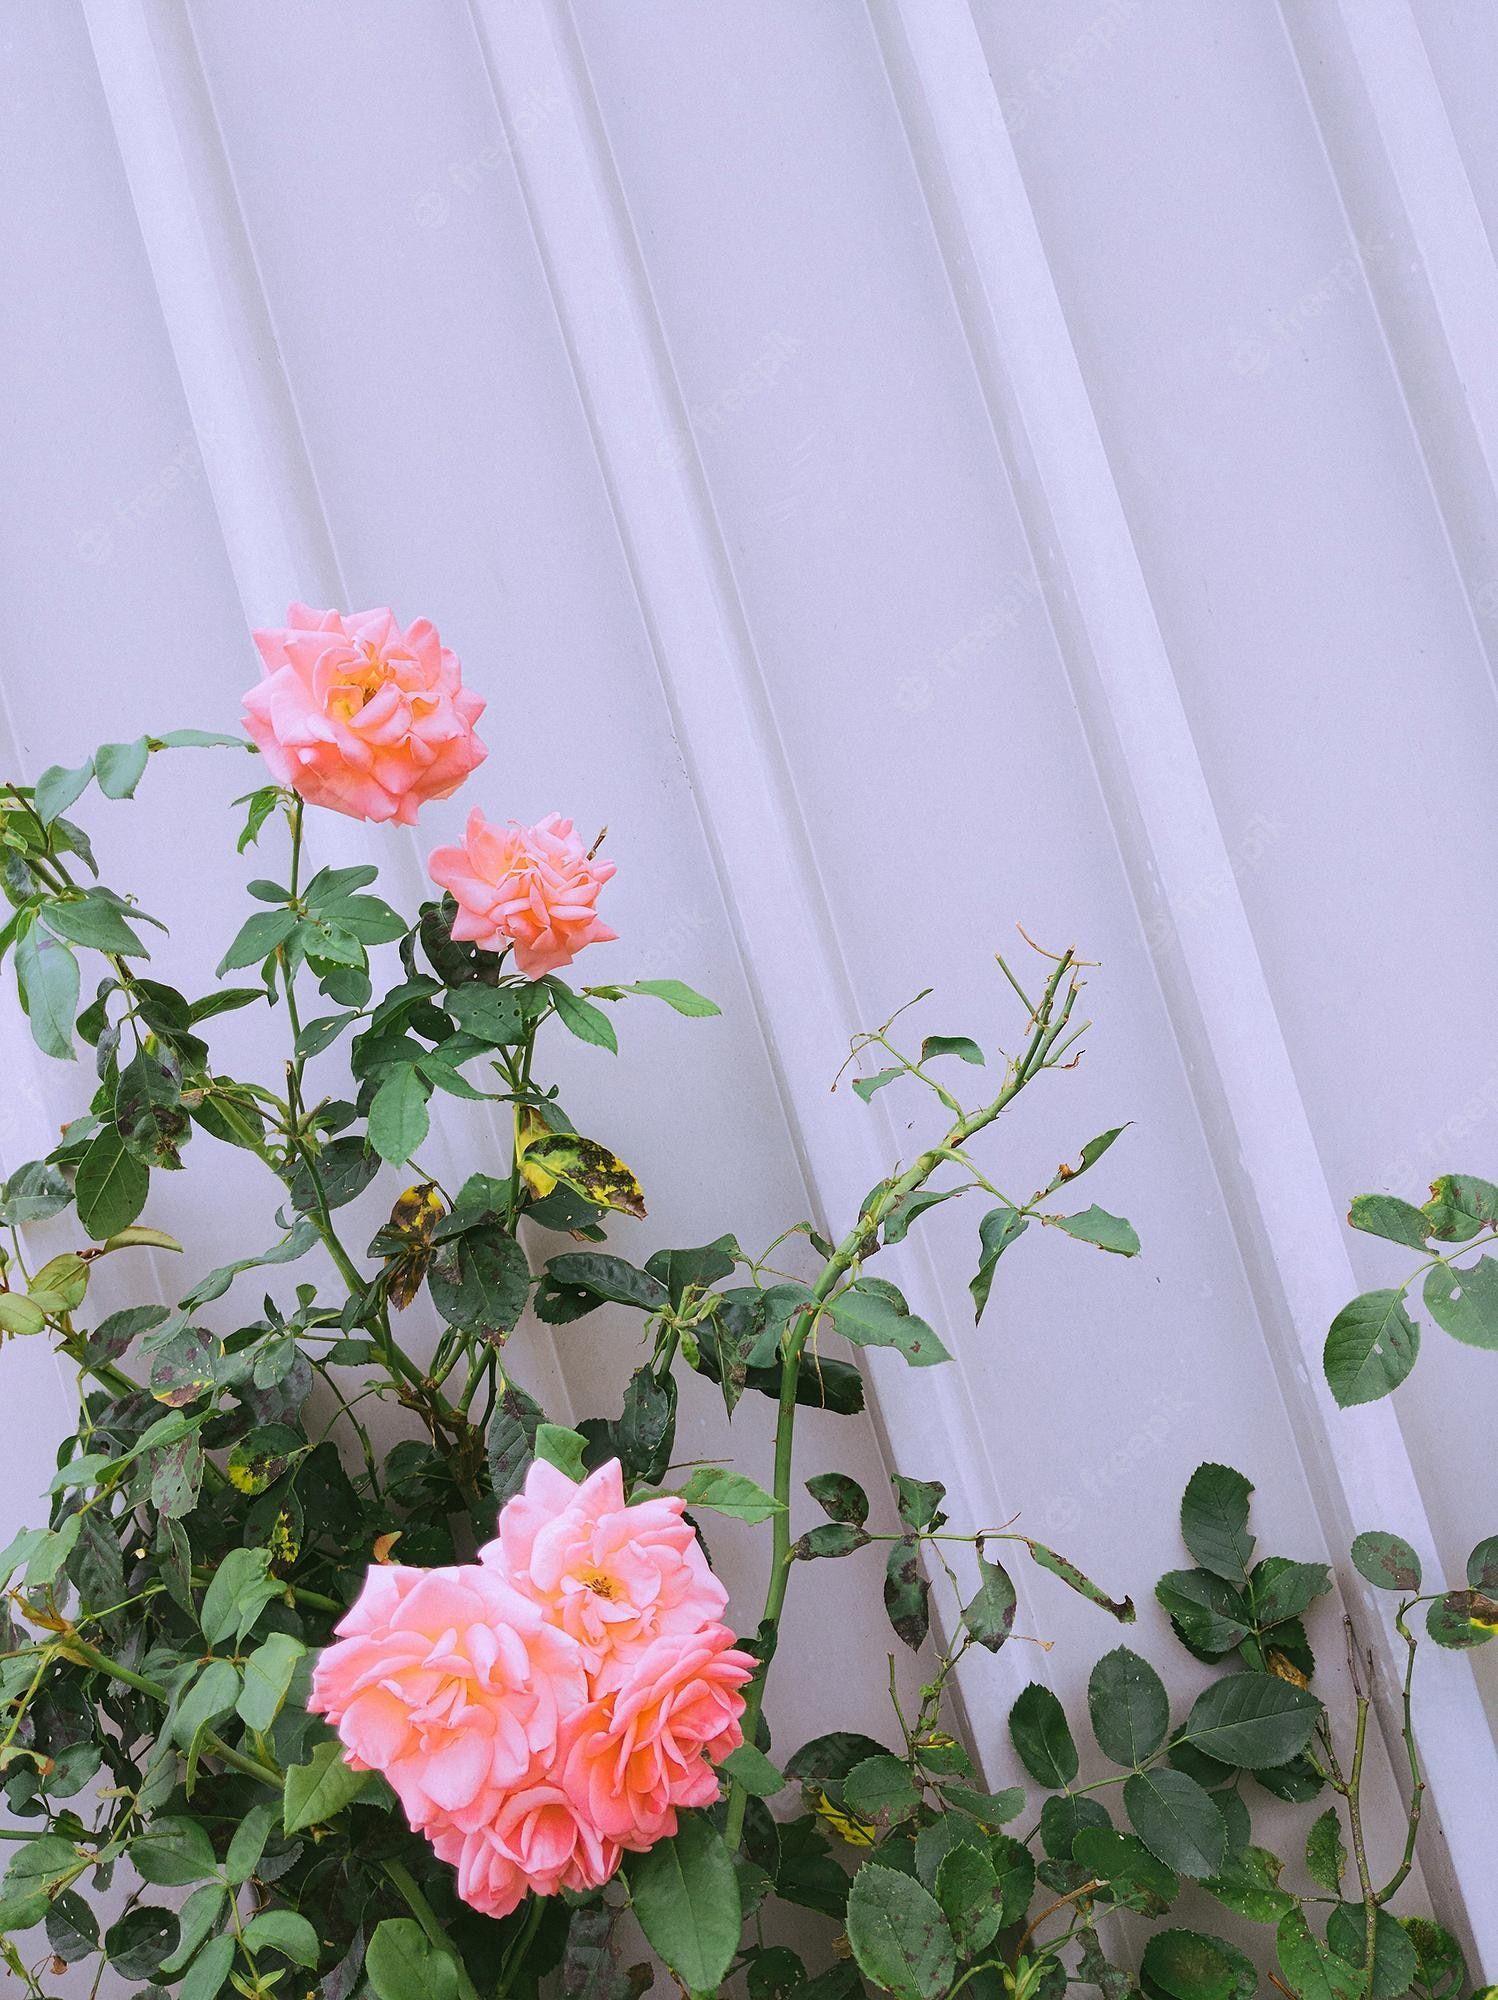  Rosen Hintergrundbild 1498x2000. Stilvolle blumentapete rosen und graue wandtextur minimalistische ästhetik